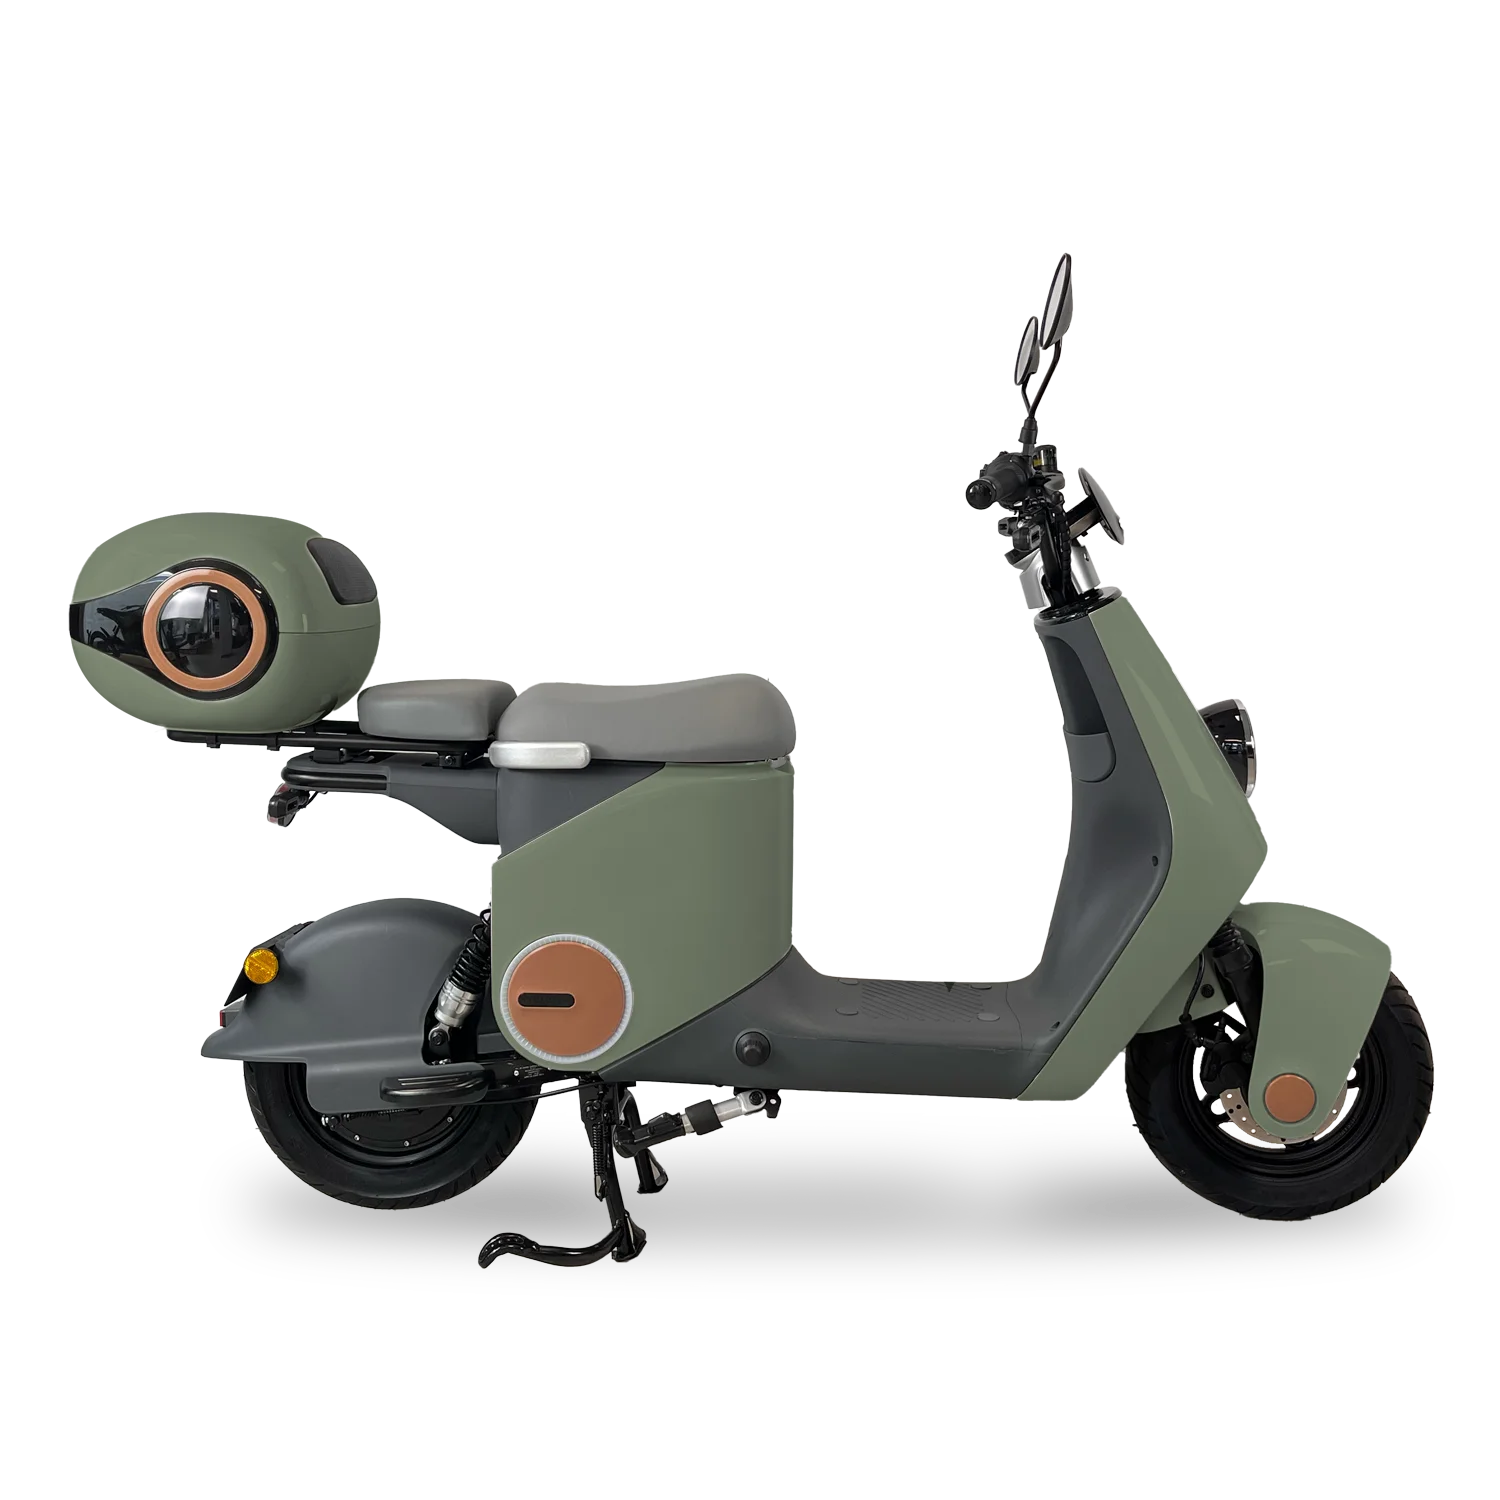 Scooter Singo 50vert-militaire